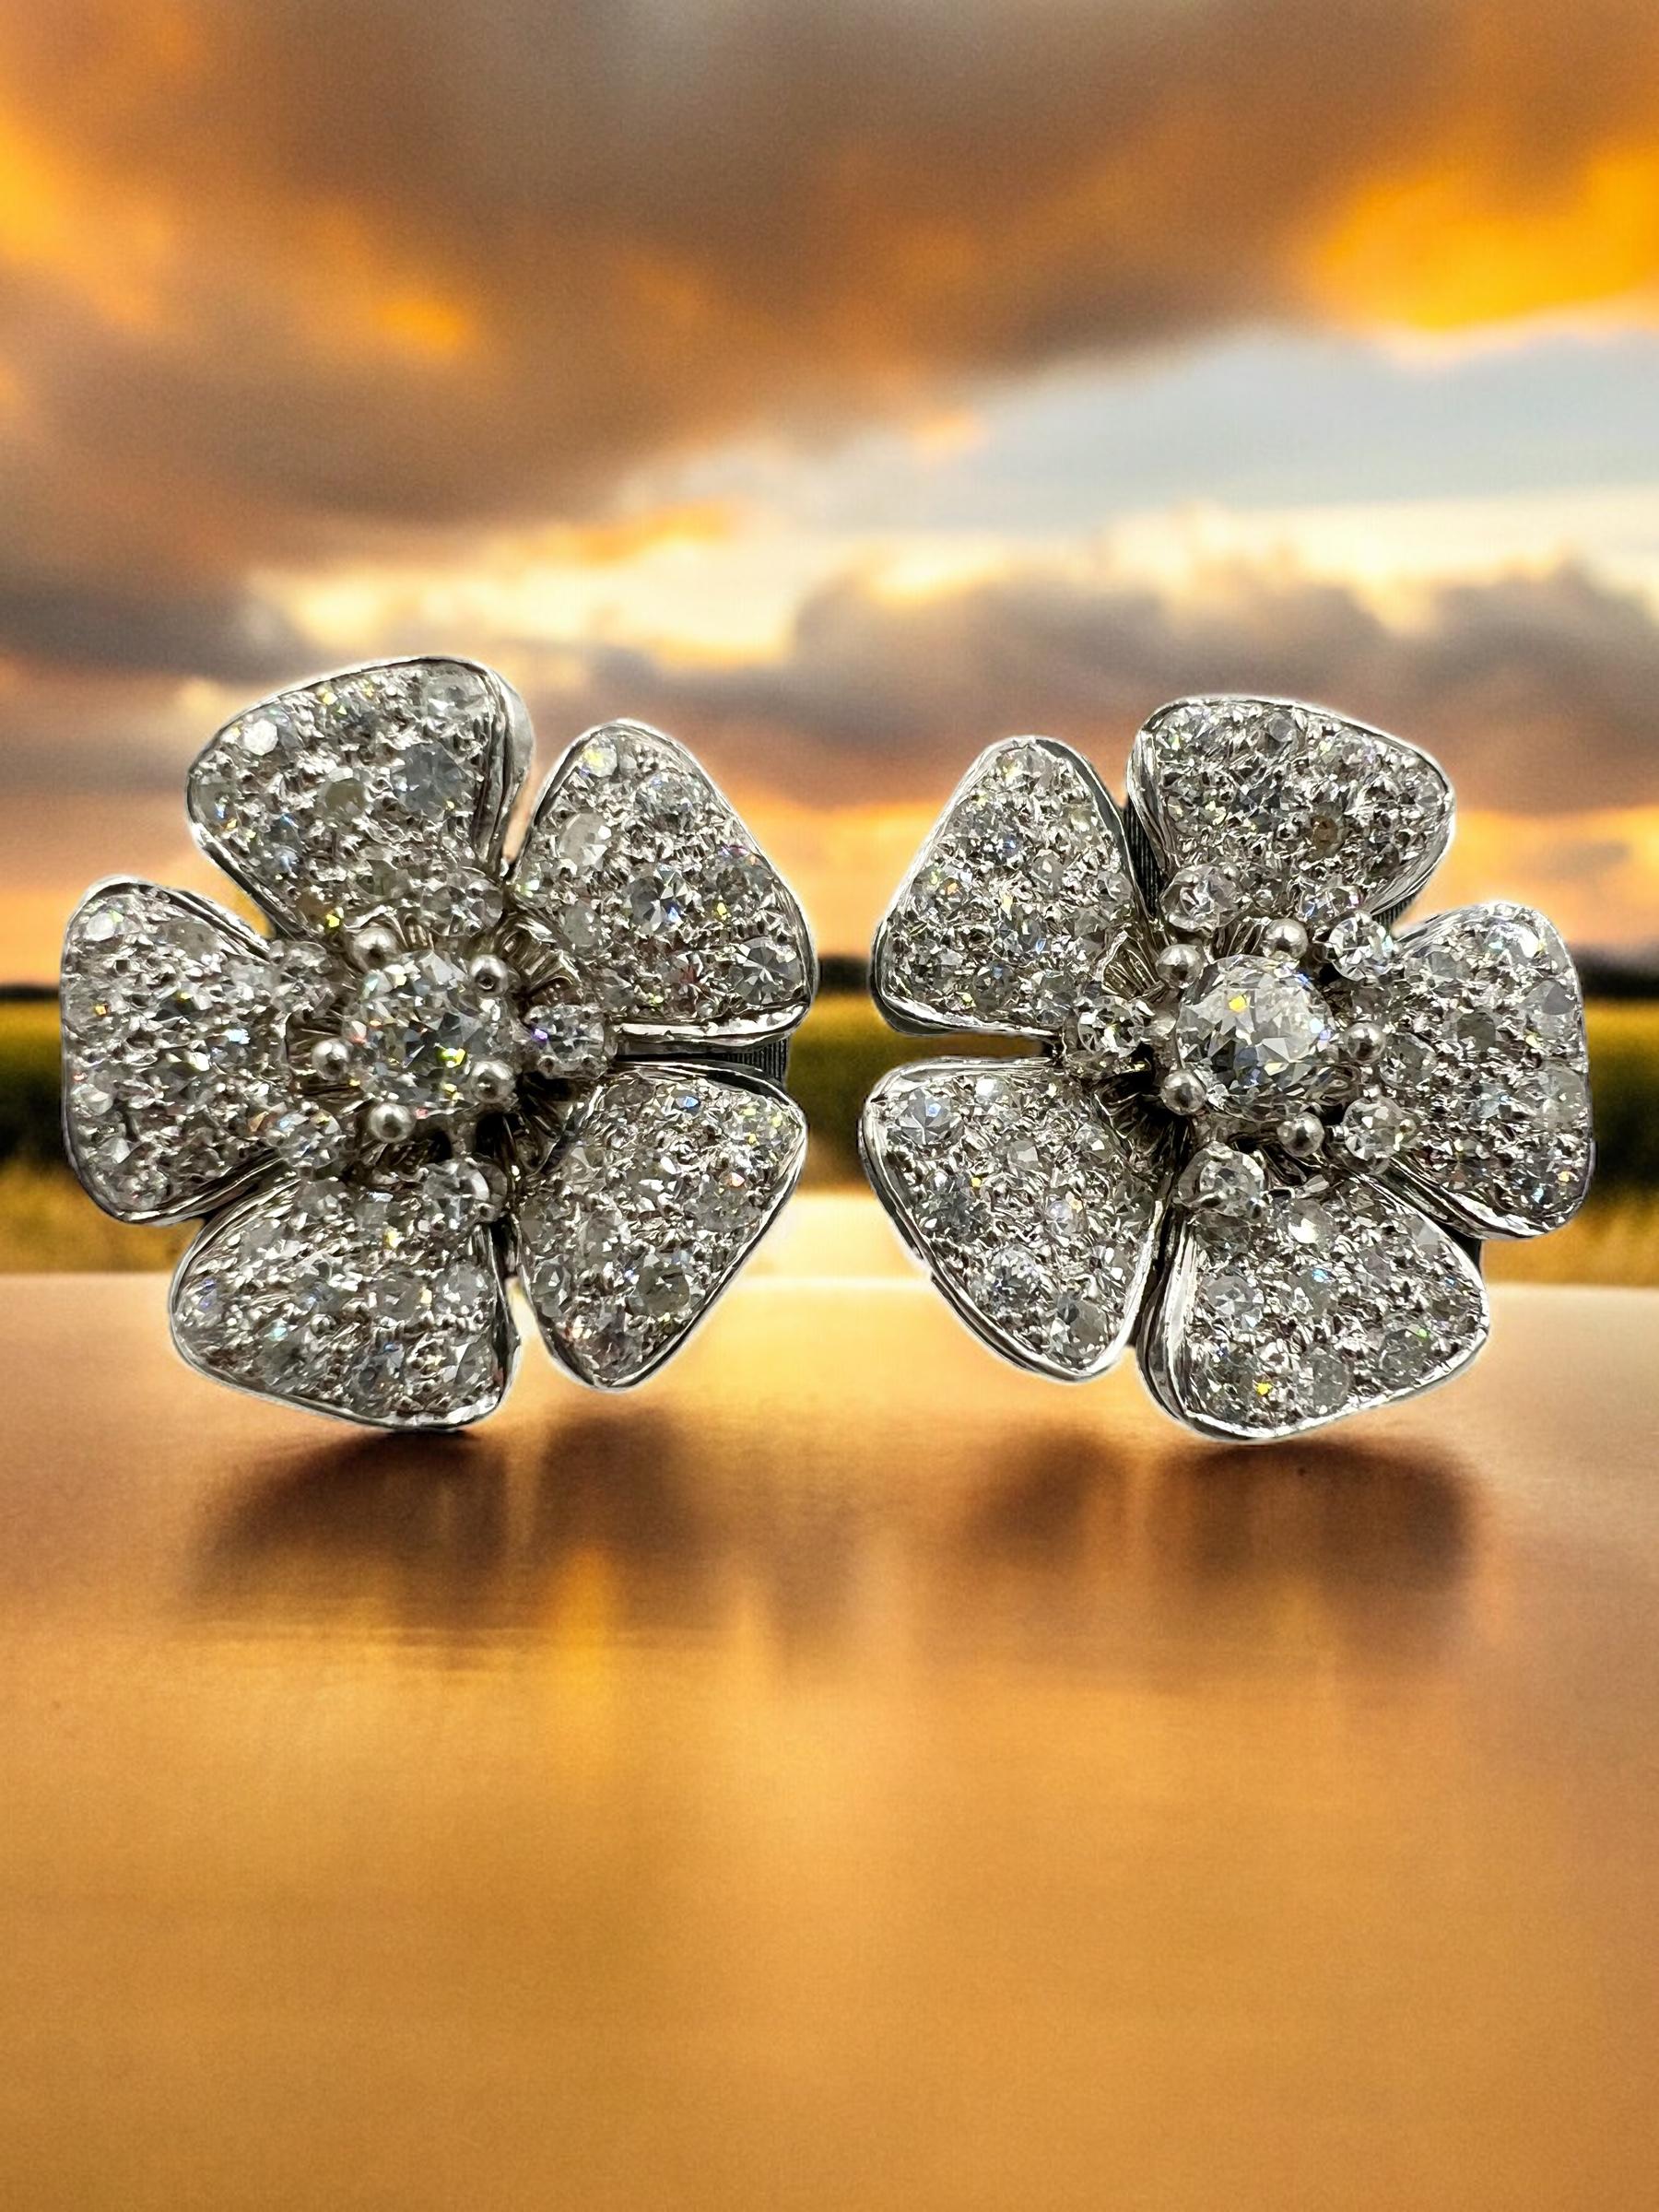 Vintage-Diamantblumen-Ohrringe aus Platin, ca. 1950er Jahre.

Vintage Diamond Flower Platinum Earrings sind ein zeitloses und elegantes Accessoire, das jede Frau in ihrer Schmucksammlung haben sollte. Diese exquisiten Ohrringe strahlen Raffinesse